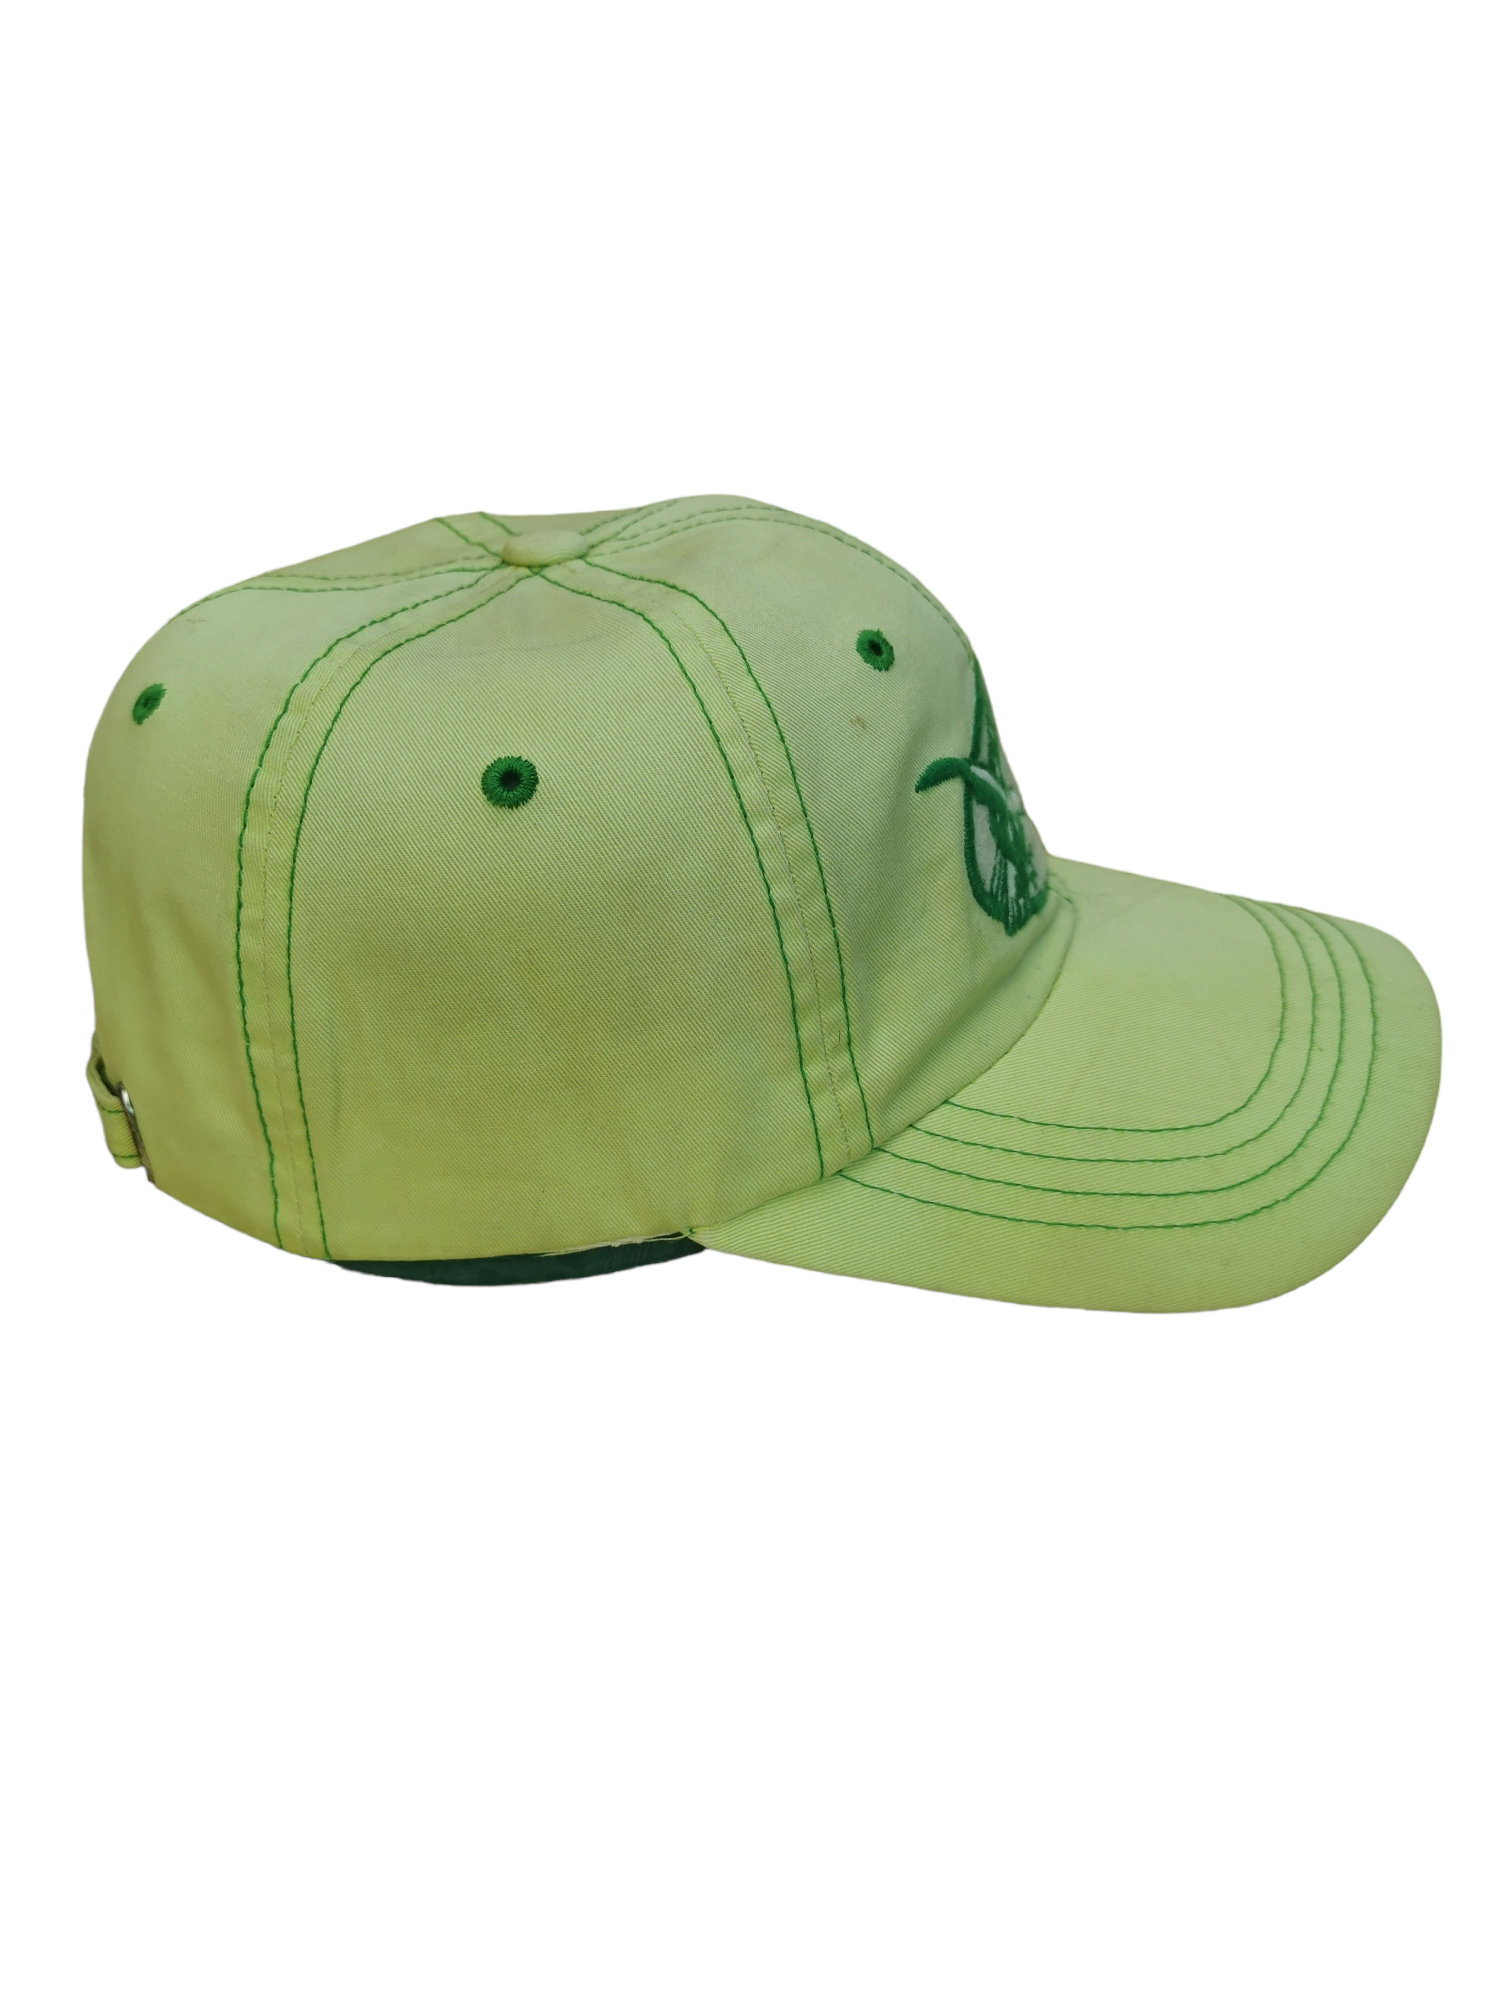 RUDOLP VALENTINO DESIGNER HAT CAP - 4